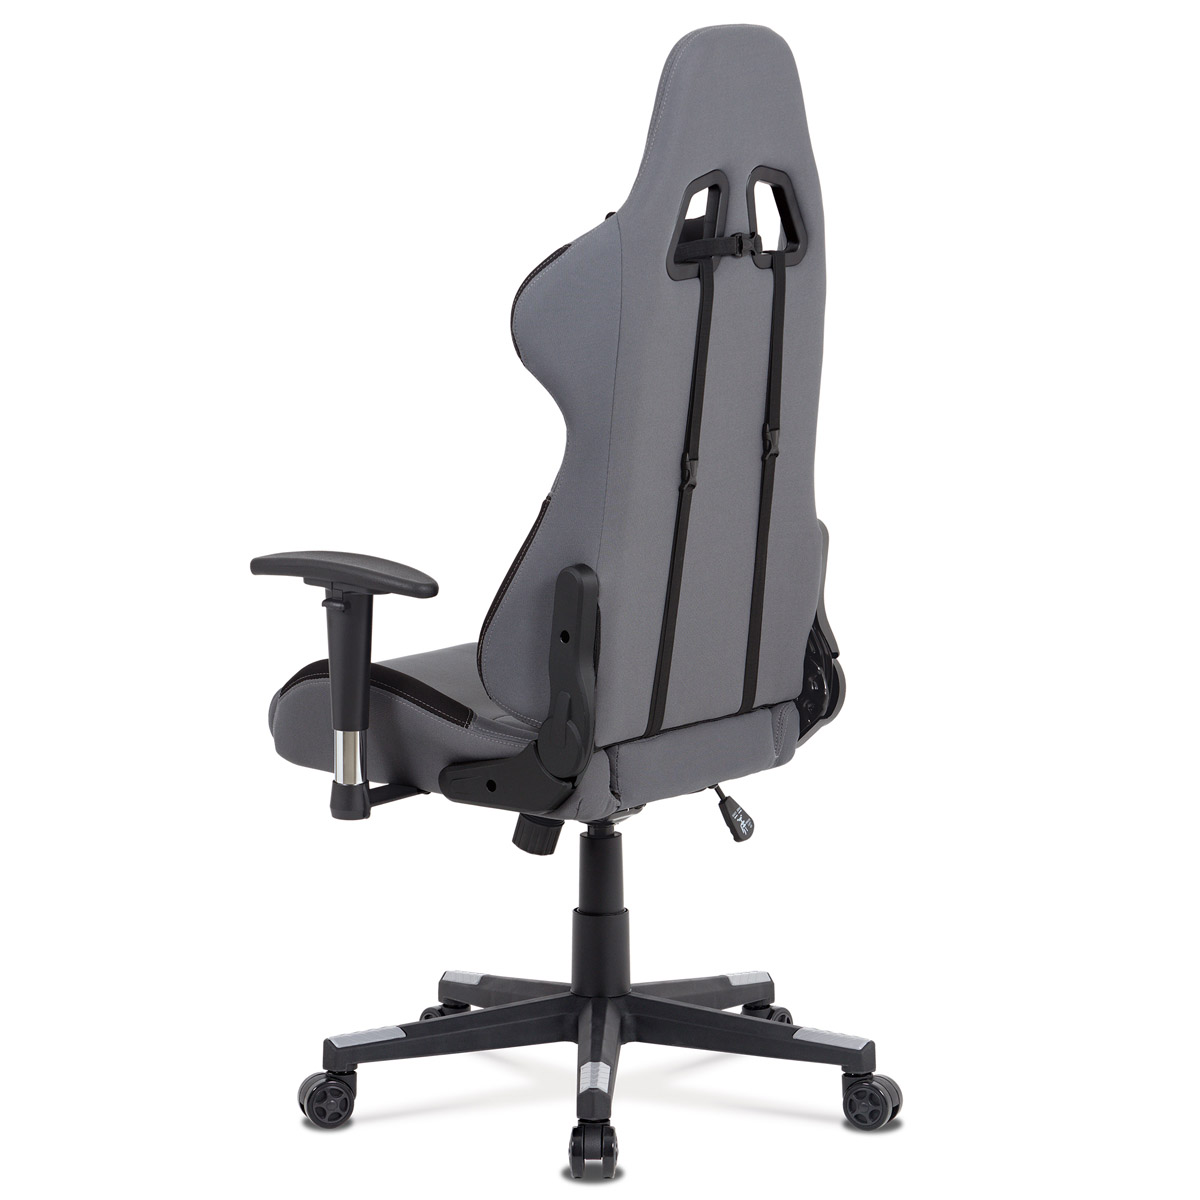 Kancelářská židle houpací mech., šedá + černá látka, plast. kříž